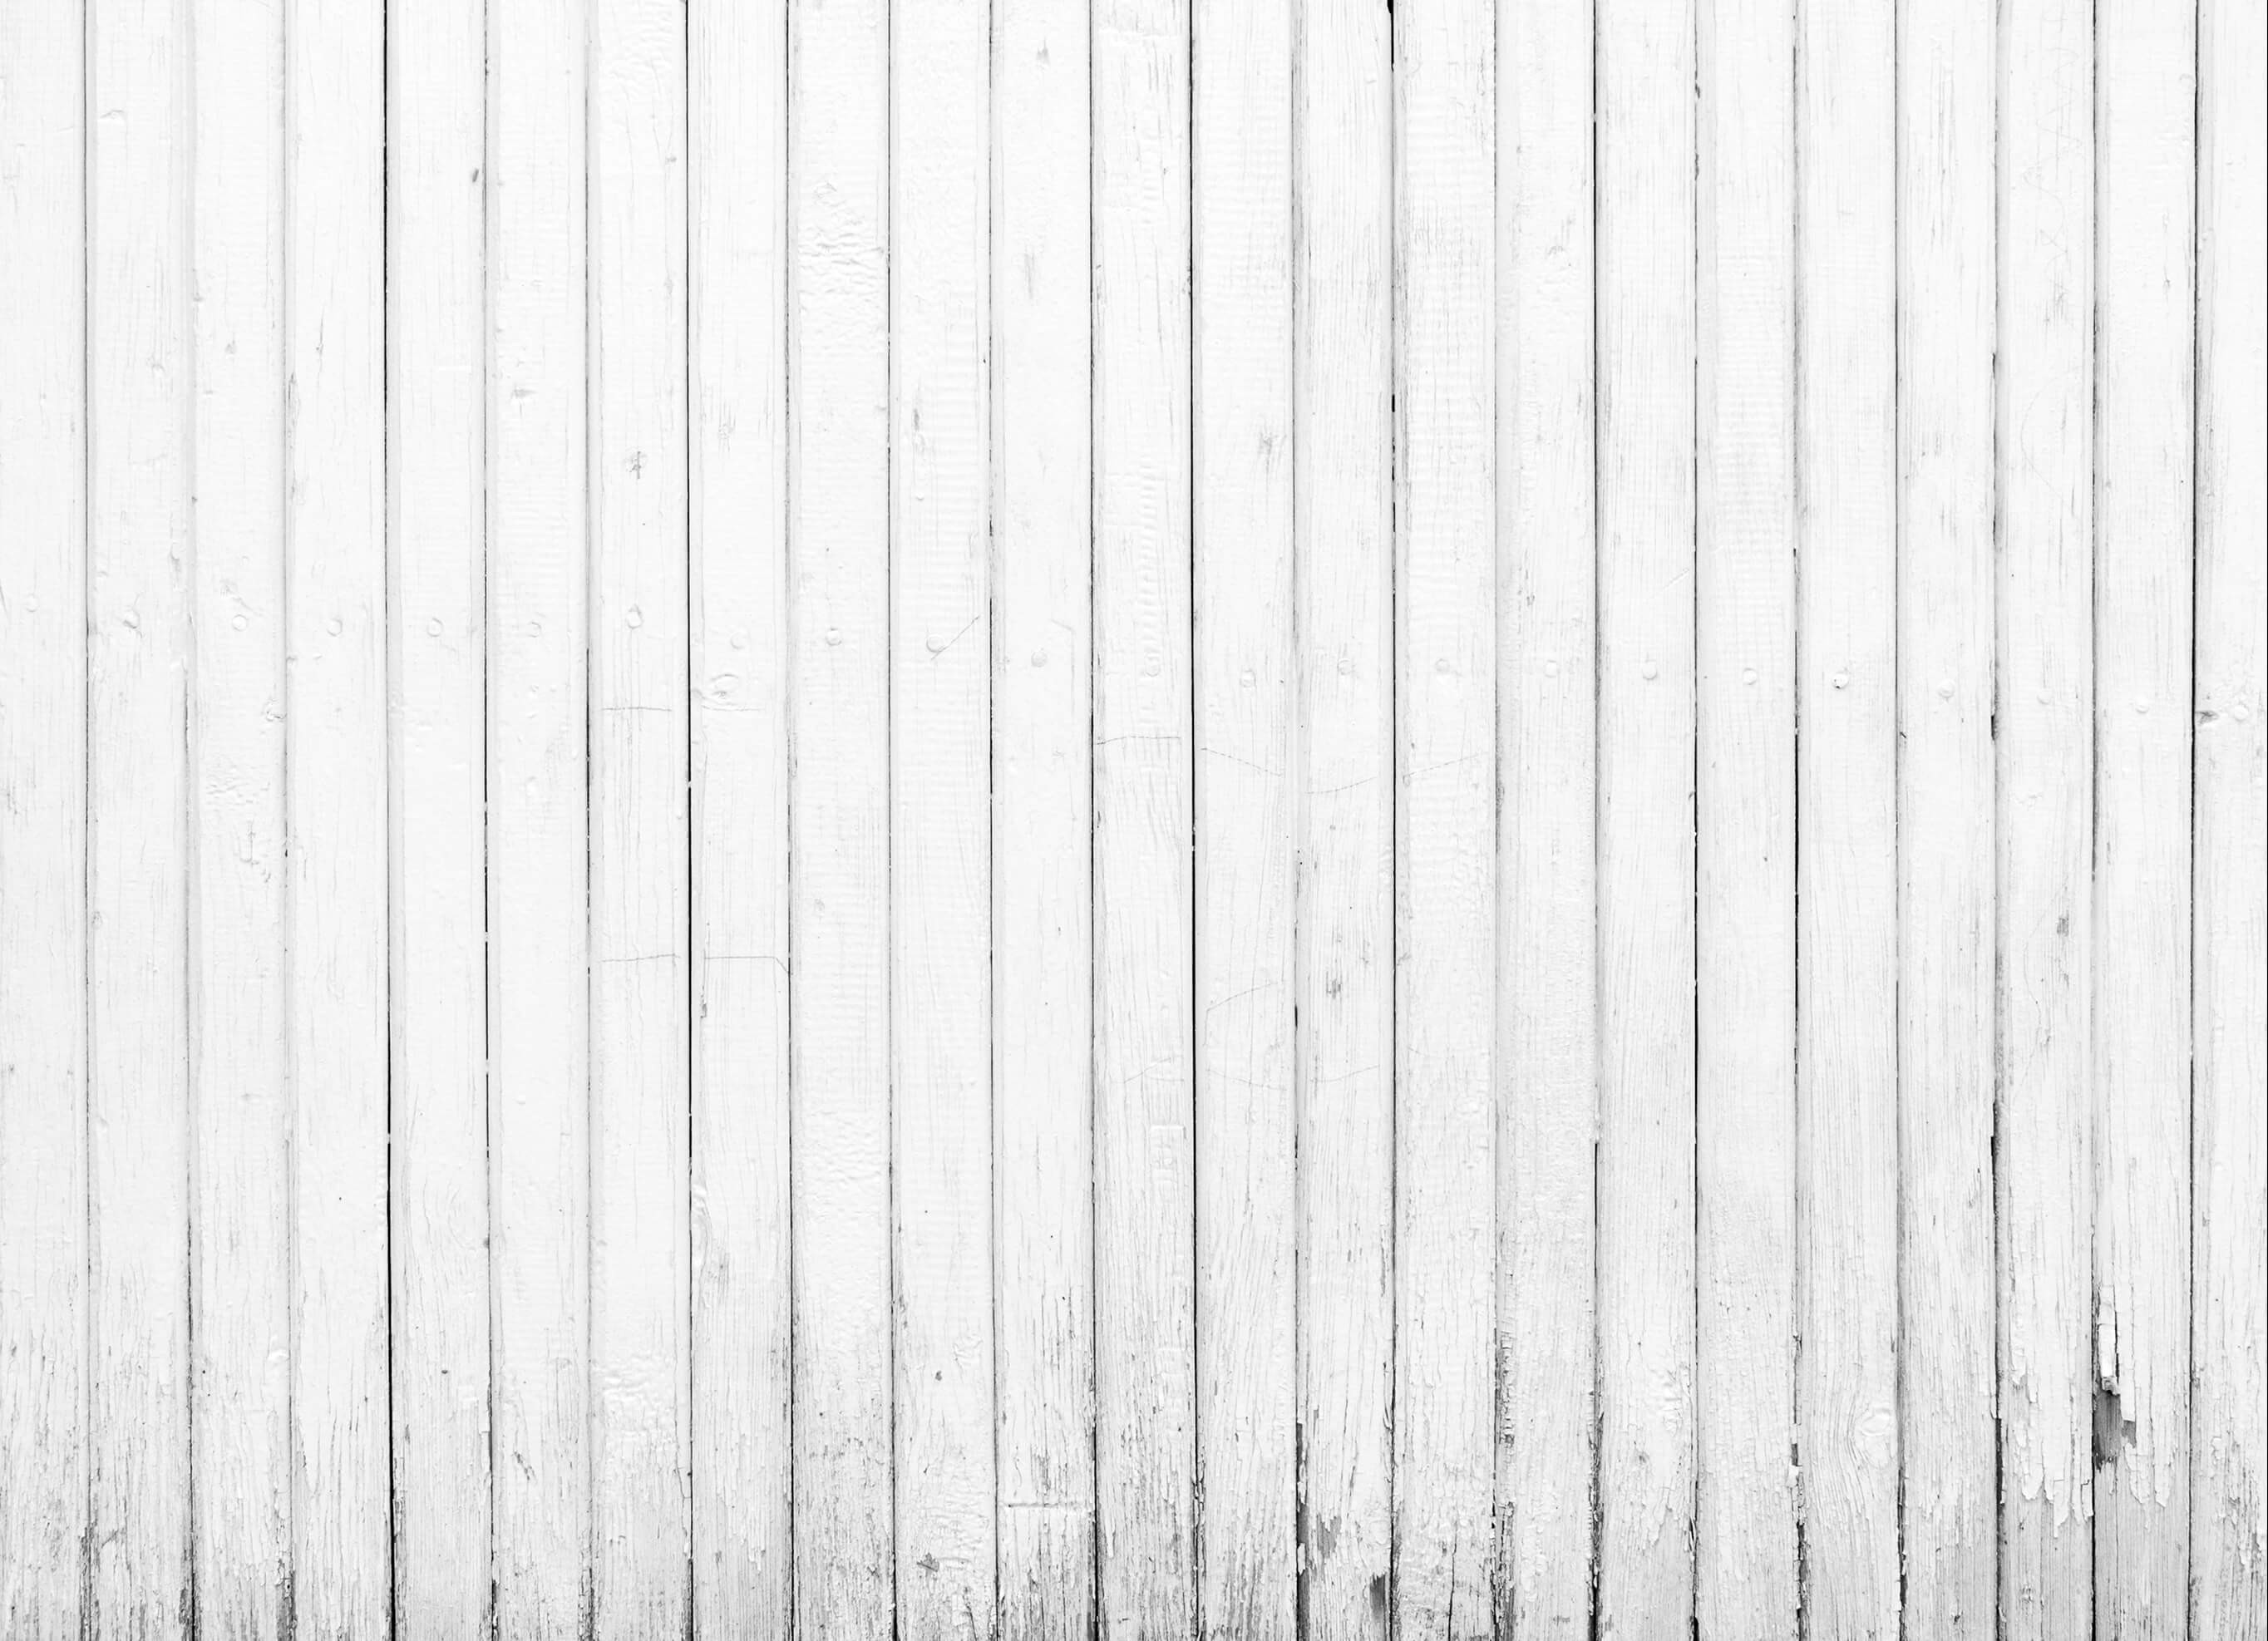 2728x1974 wooden flooring background photo - 1